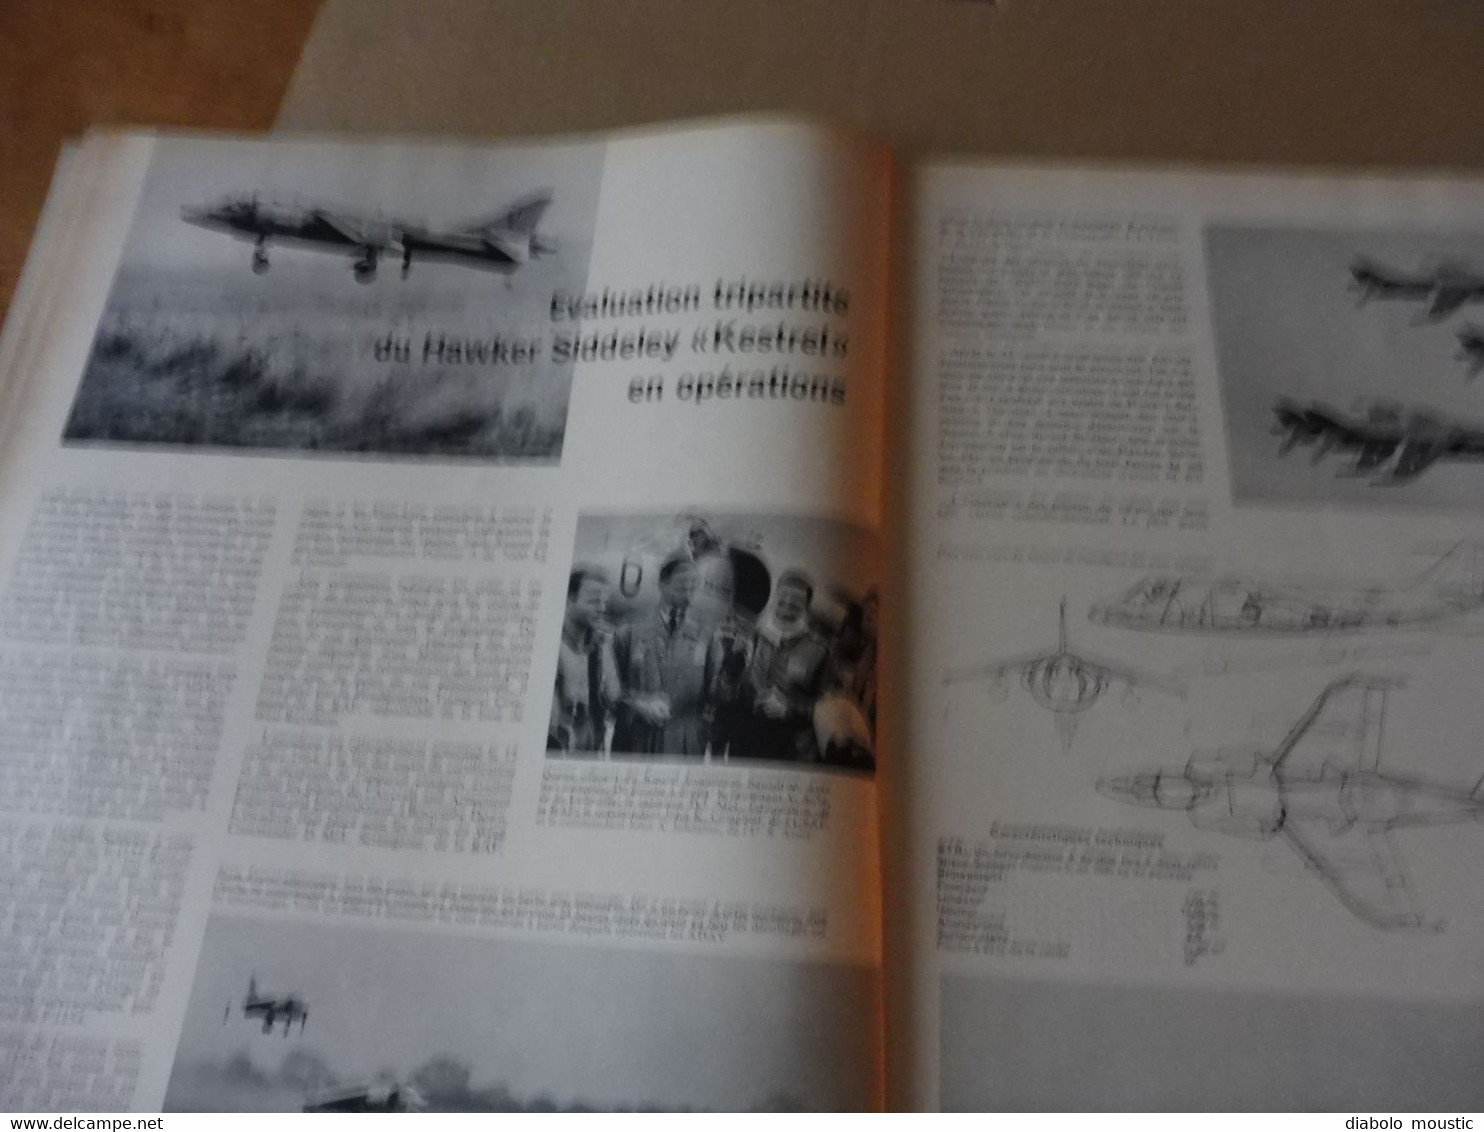 1965 INTERAVIA   - Navigation sur grande distance; Défense contre les blindés; Mirage IIIS des suisses; Etc